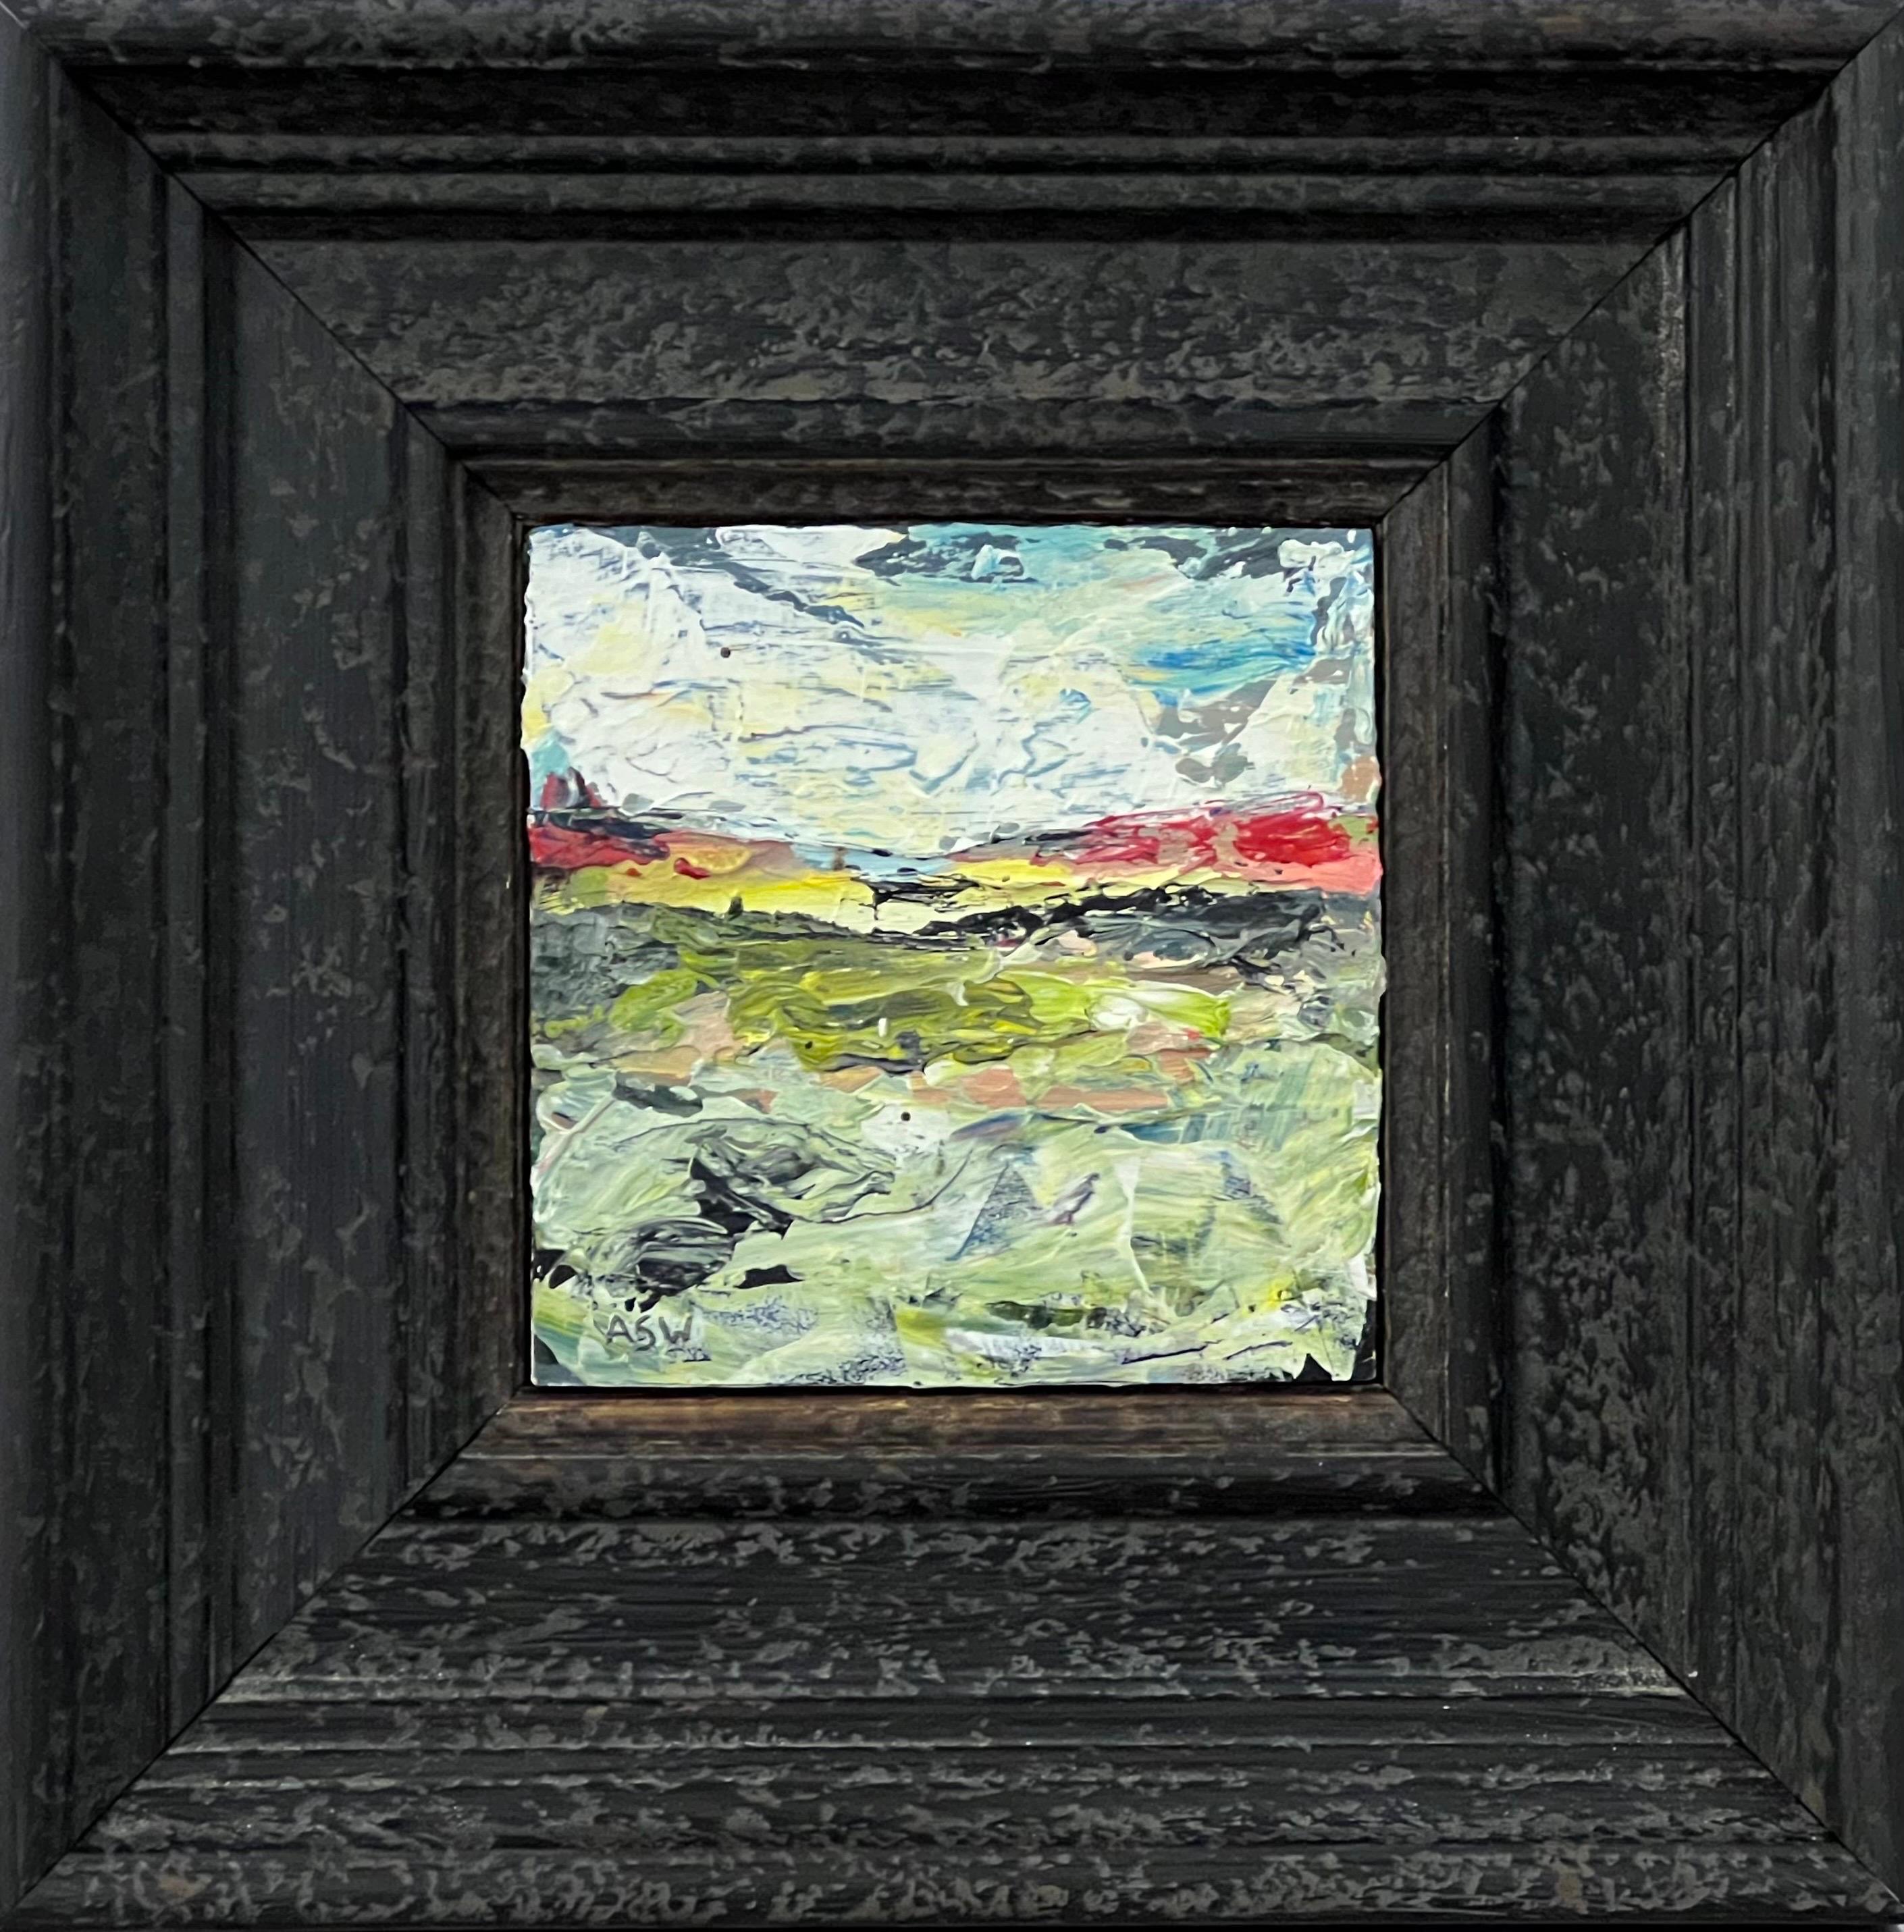 Abstrakte Meereslandschaft, Miniaturstudie, zeitgenössische britische Künstlerin, Impasto (Abstrakter Expressionismus), Painting, von Angela Wakefield